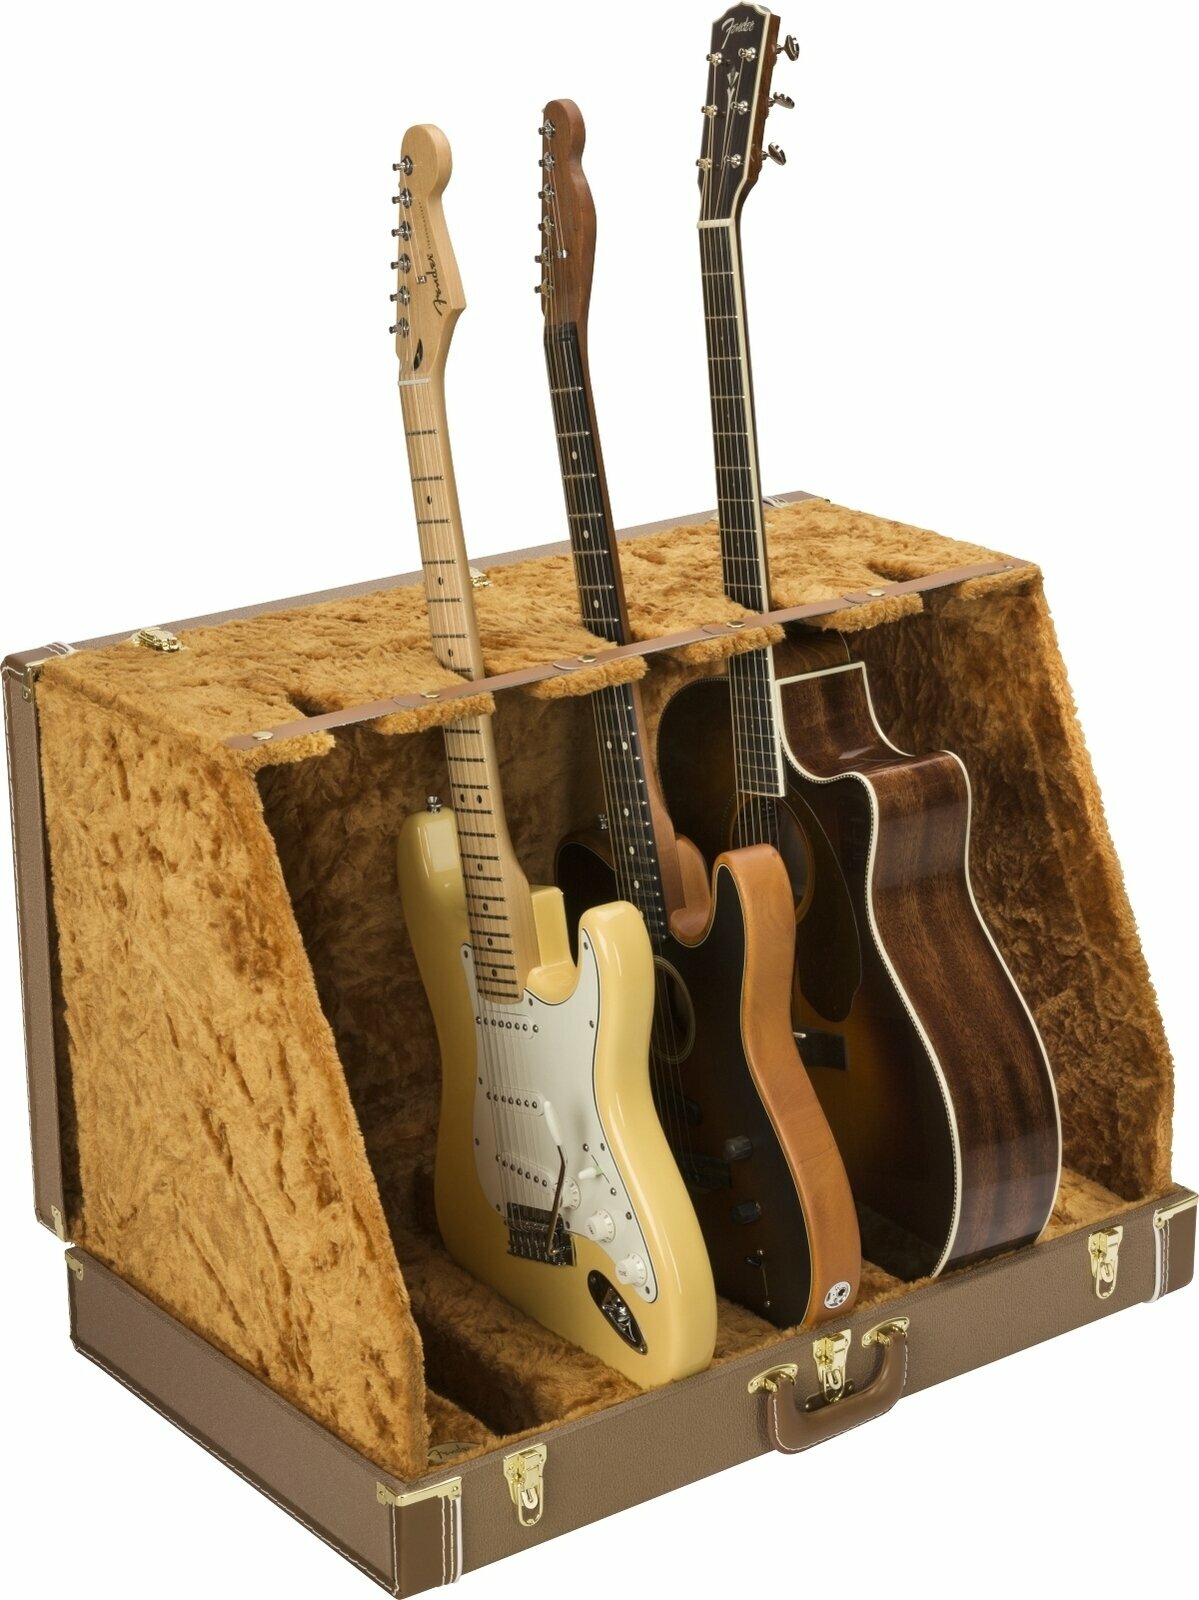 Standaard voor meerdere gitaren Fender Classic Series Case Stand 5 Brown Standaard voor meerdere gitaren